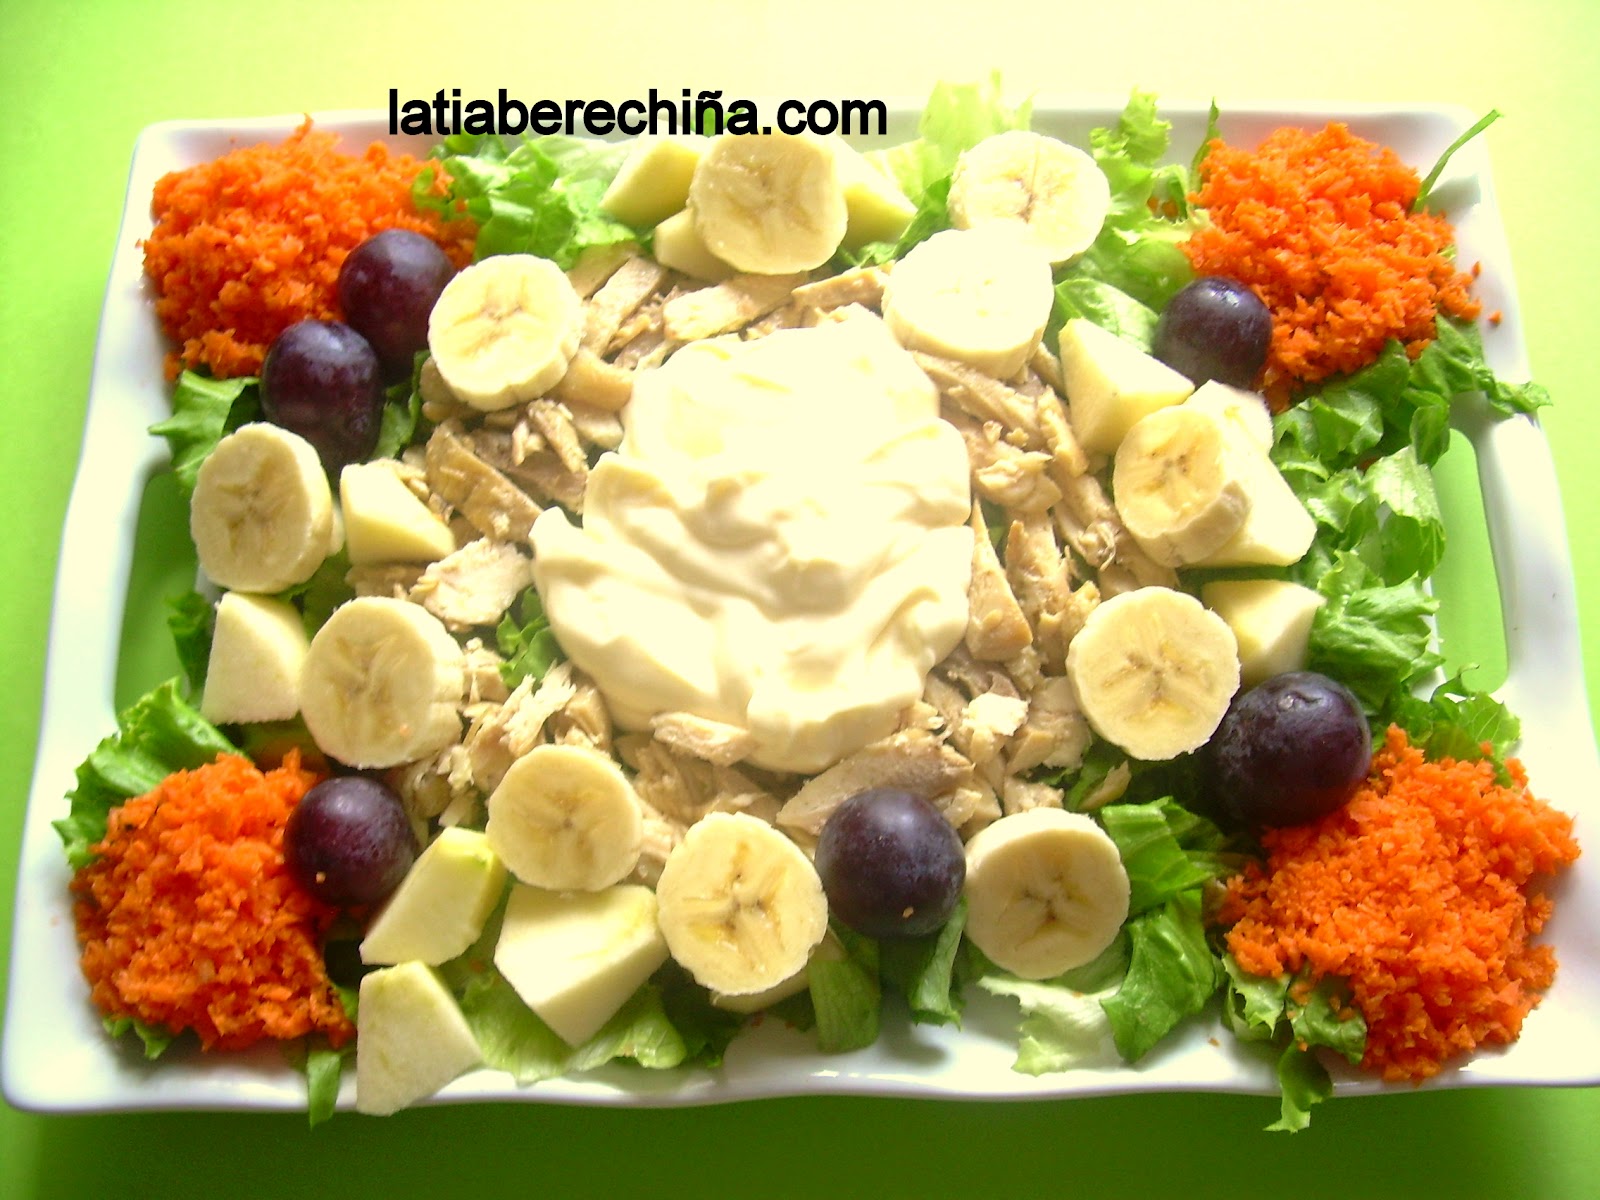 El blog de la tia Berechiña: Ensalada de pollo con mayonesa y fruta